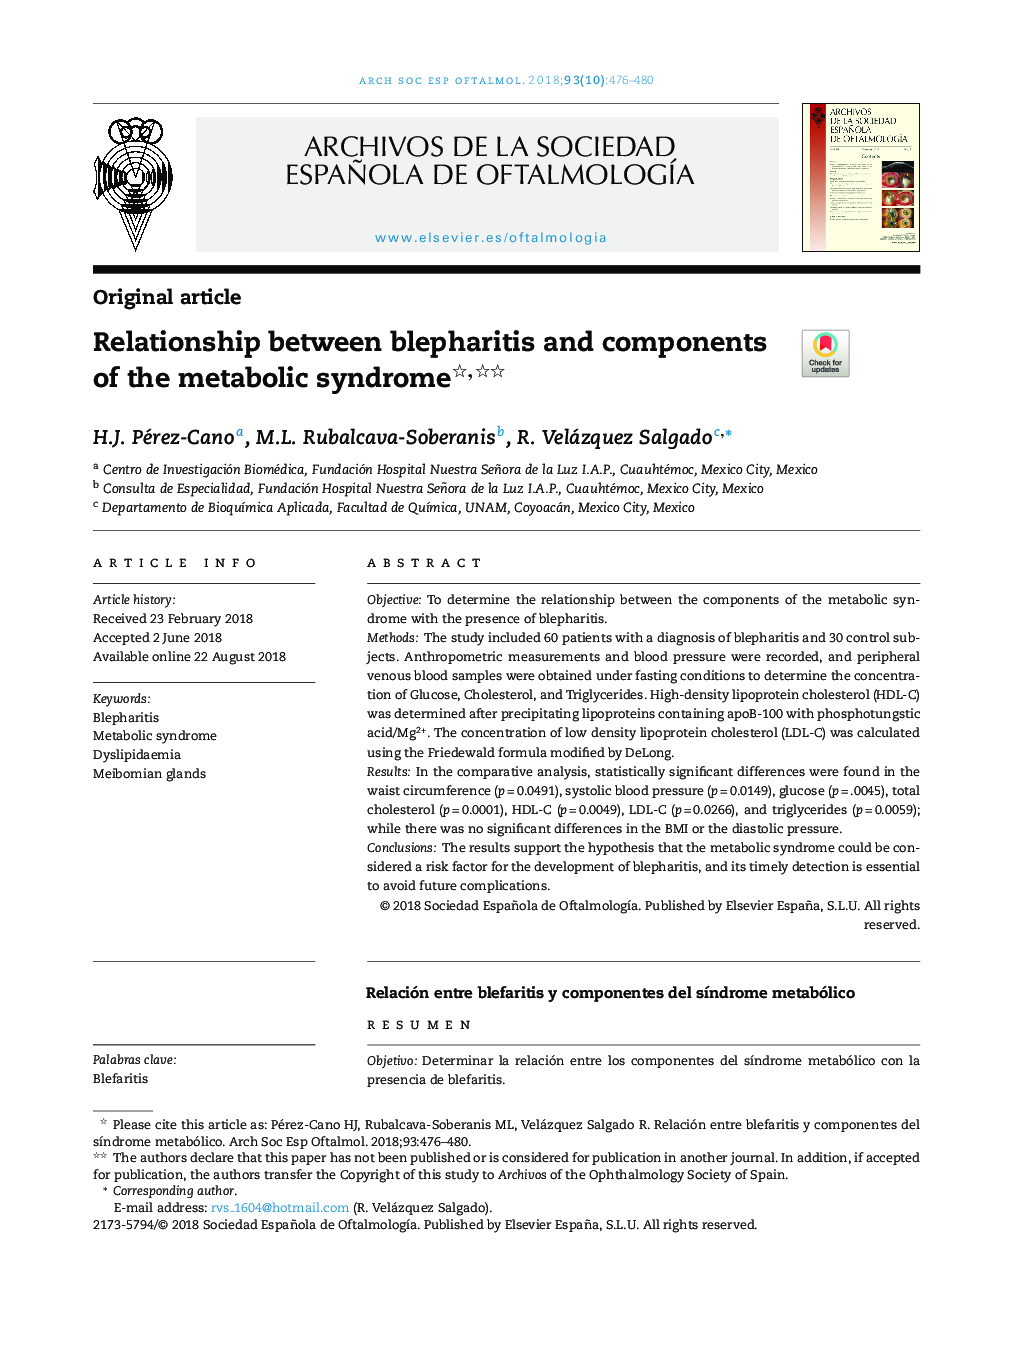 ارتباط بین بلفاریت و مولفه های سندرم متابولیک